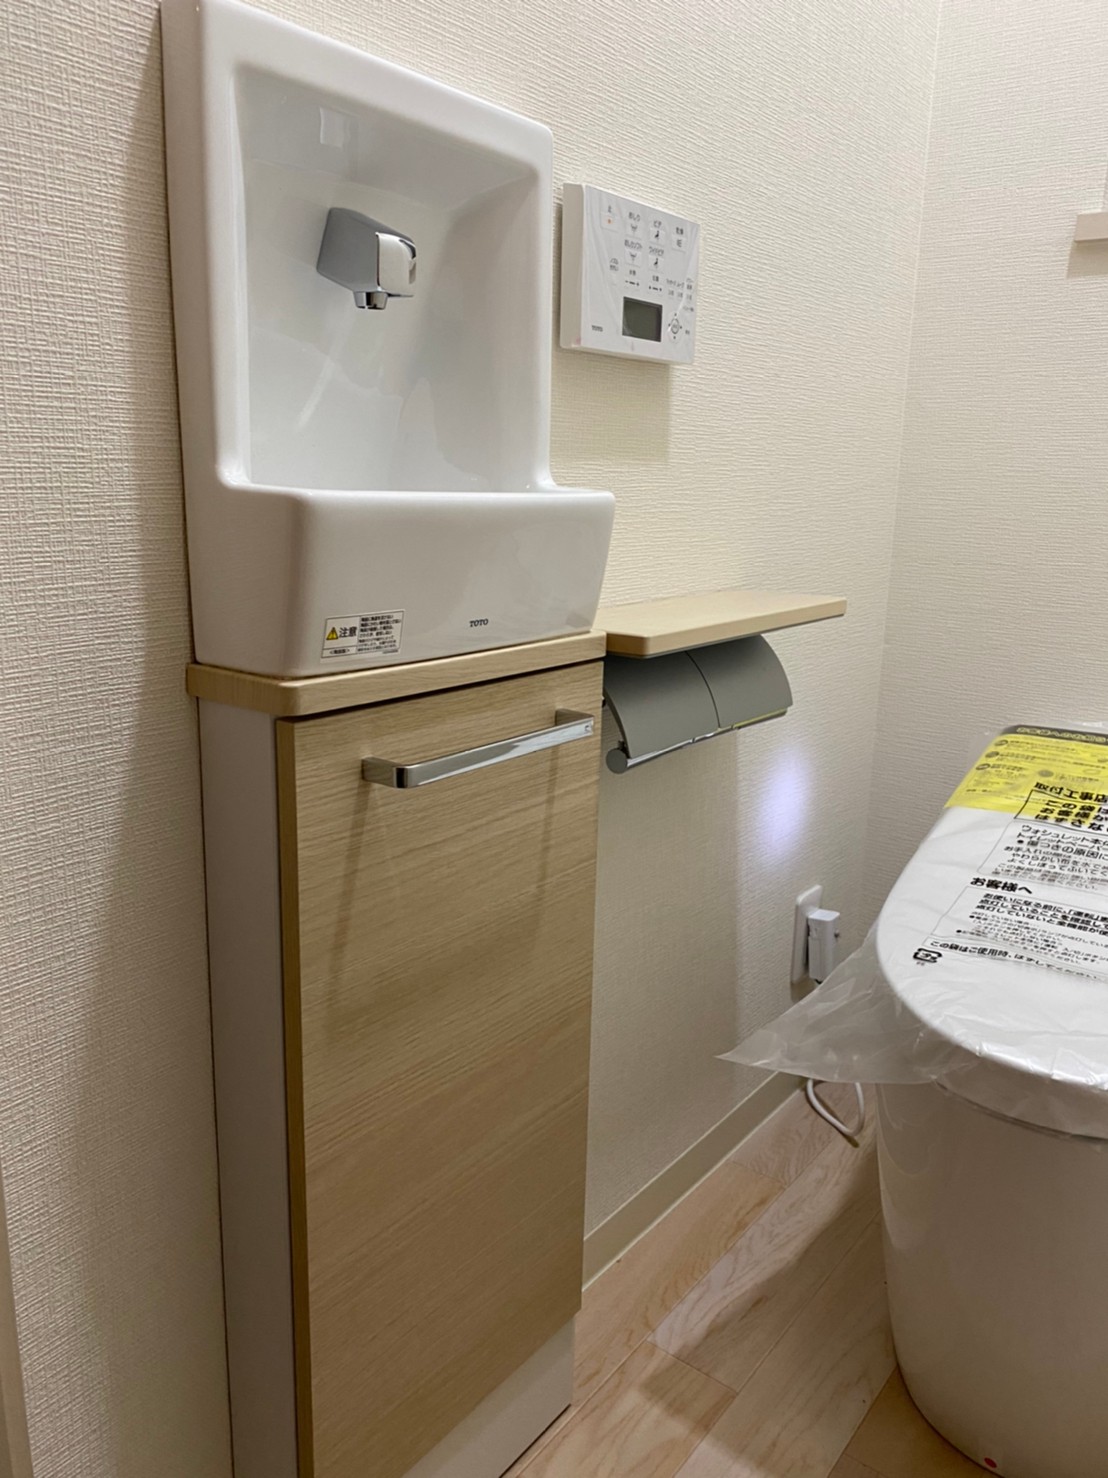 トイレリフォーム工事 TOTOネオレスト スリムシリーズ手洗い器埋め込み型 神戸市西区 須磨区 | ならはら住宅設備